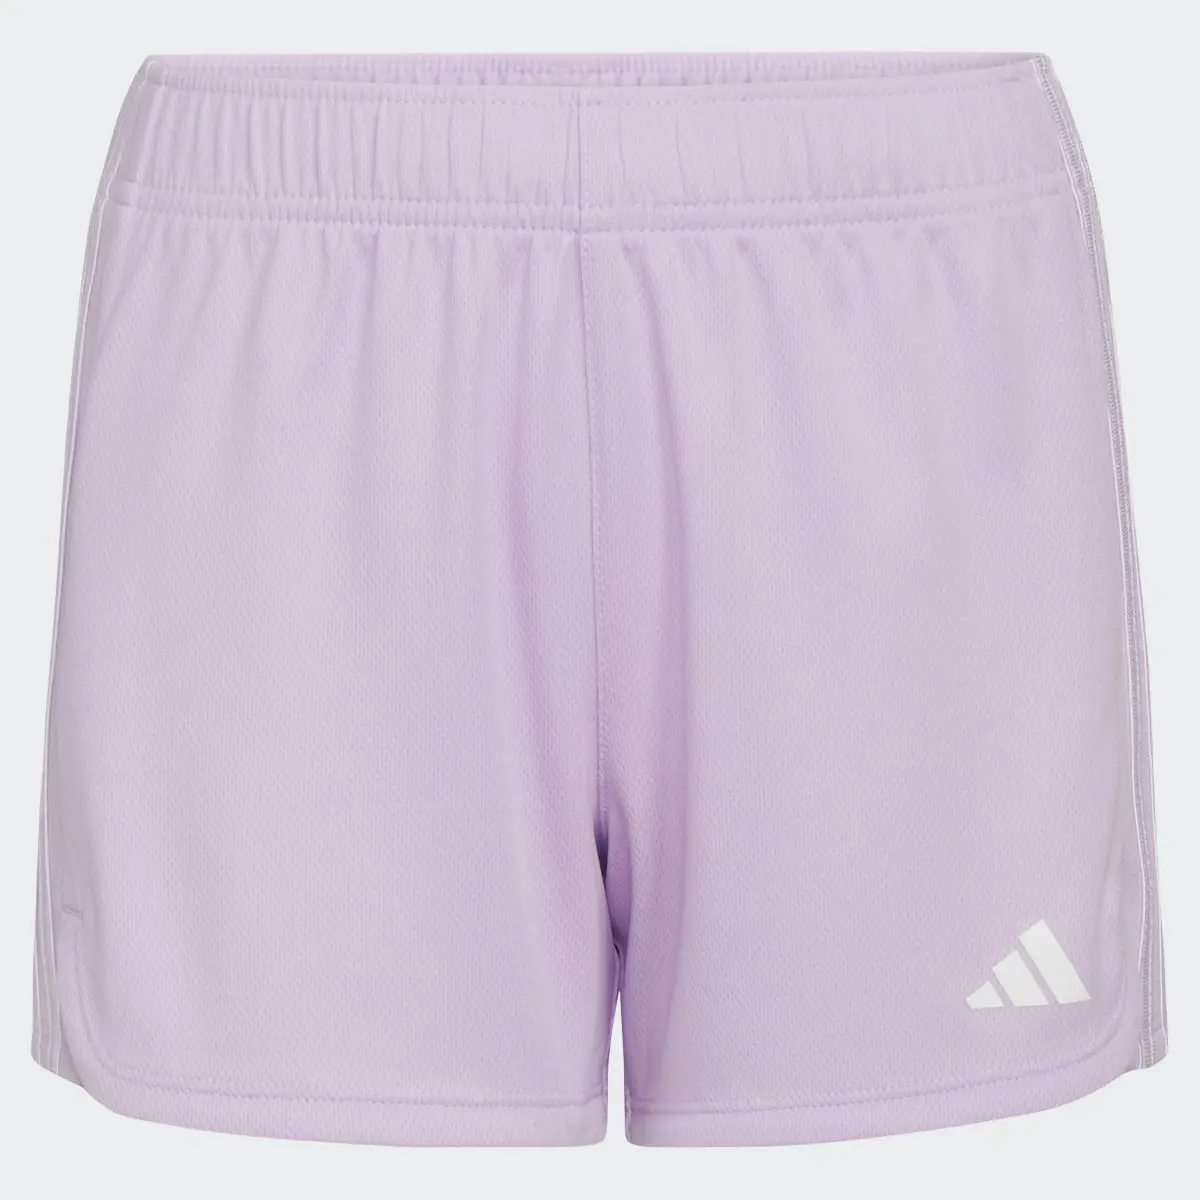 Adidas 3-Stripes Mesh Shorts. 3